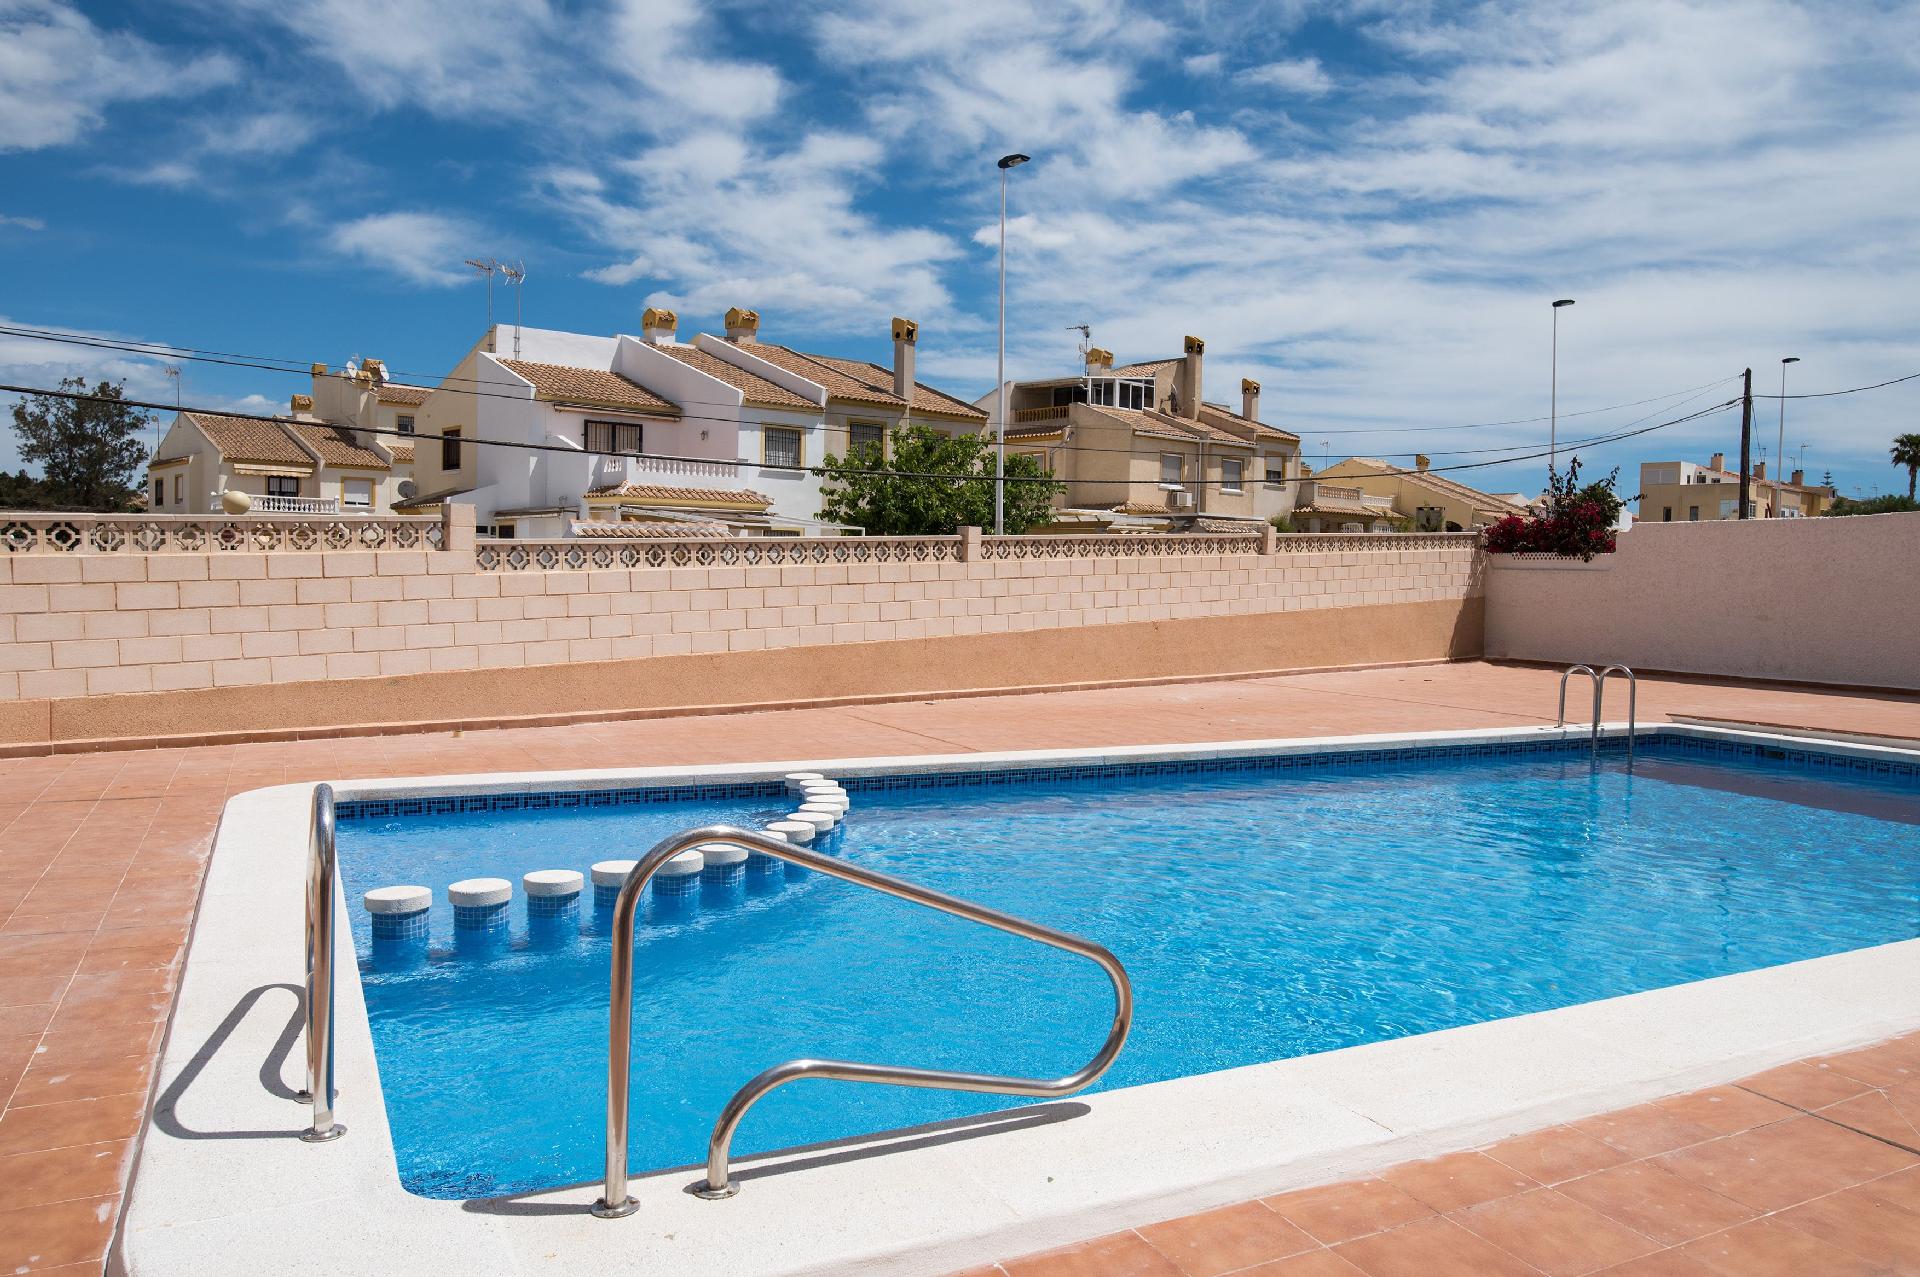 Ferienwohnung für 6 Personen ca. 60 m² i Ferienwohnung in Spanien